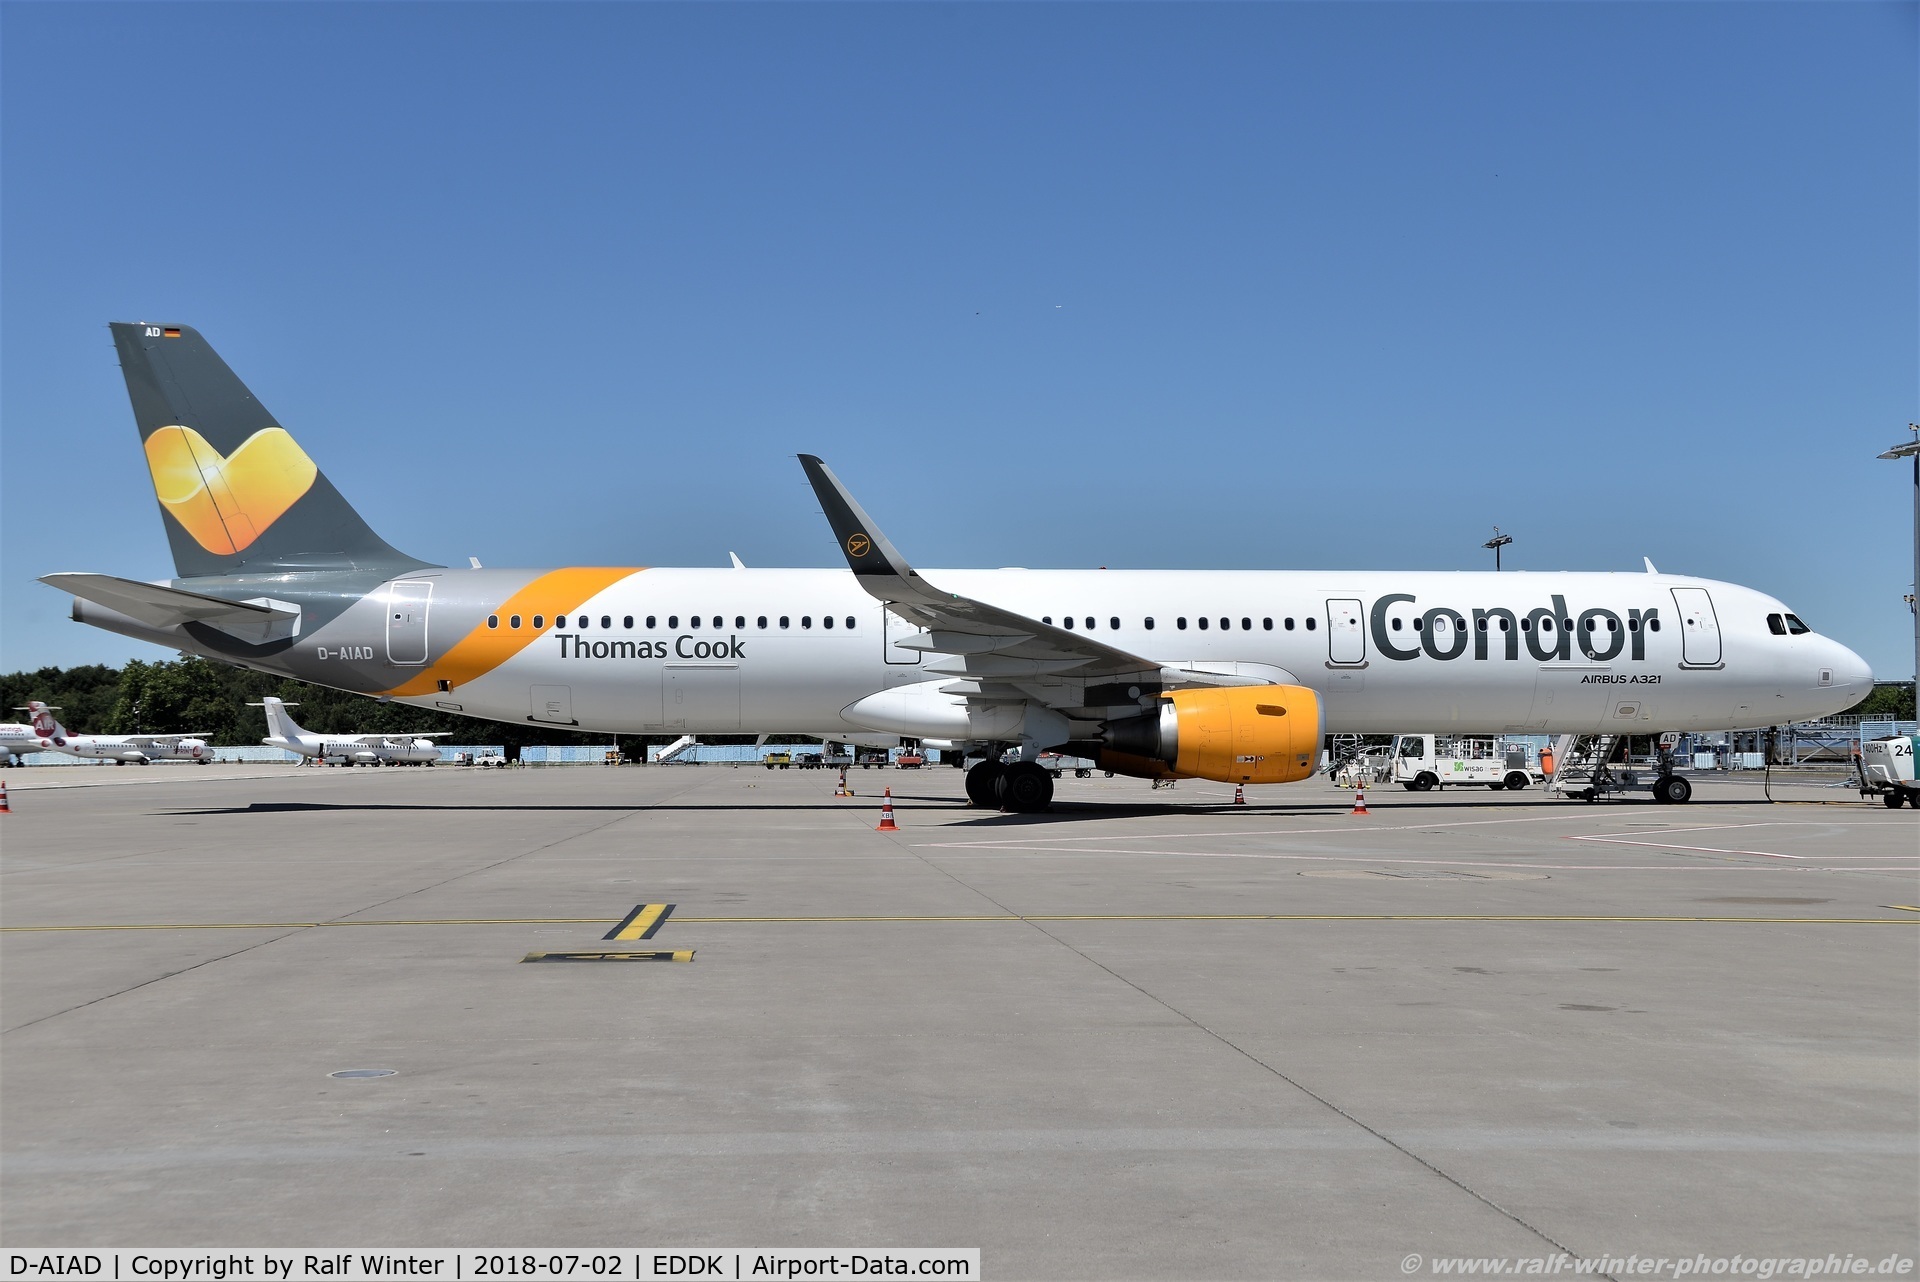 D-AIAD, 2014 Airbus A321-211 C/N 6053, Airbus A321-211(W) - DE CFG Condor - 6053 - D-AIAD - 02.07.2018 - CGN